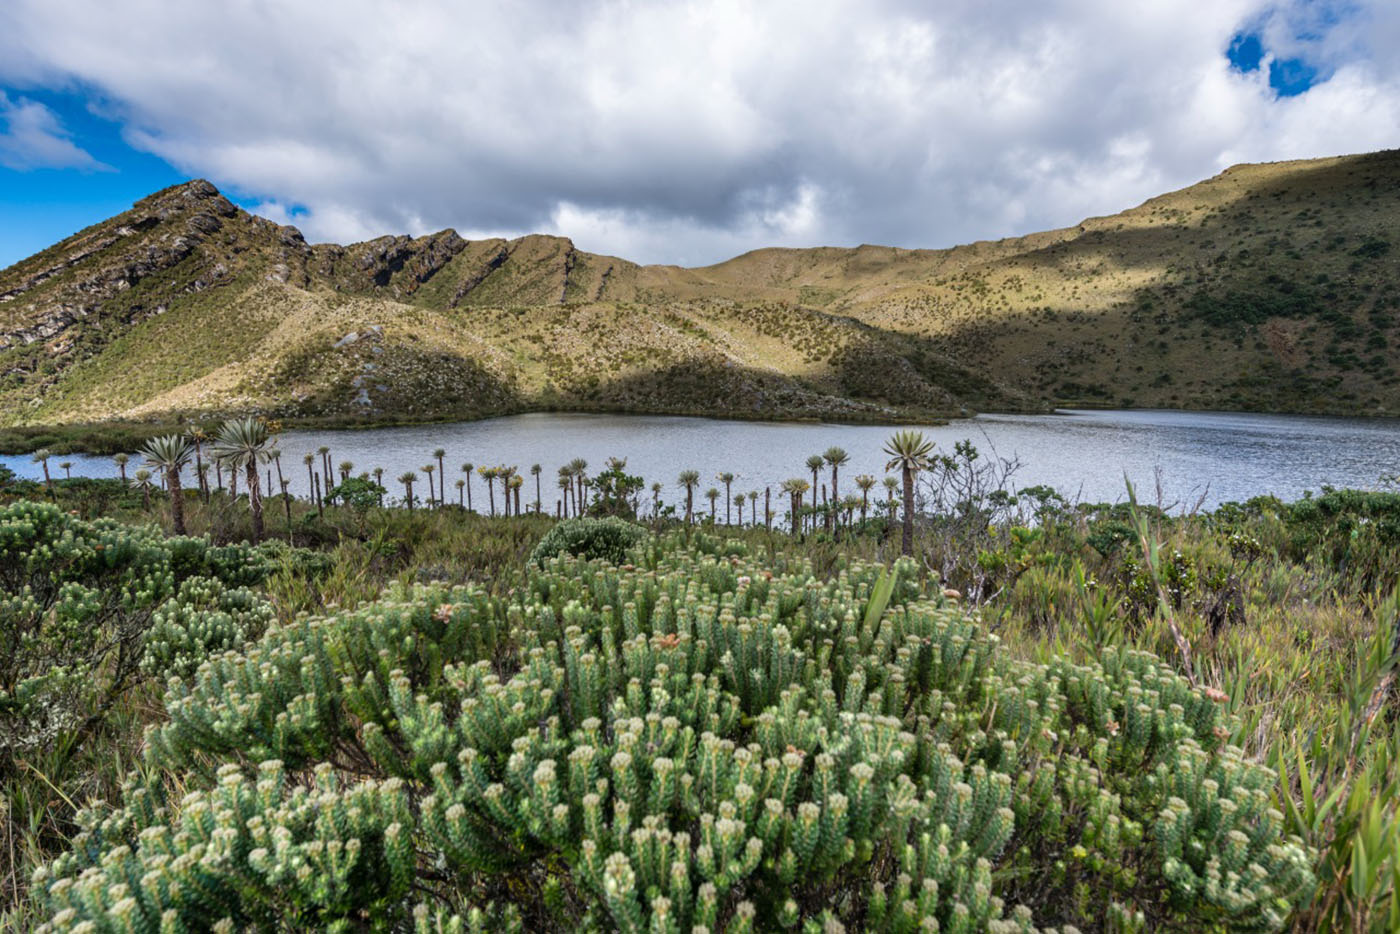 El páramo de Sabana Rubia está ubicado entre los municipios de Manaure, Codazzi, La Paz, La Jagua de Ibirico y Becerril. Foto: archivo Unimedios.